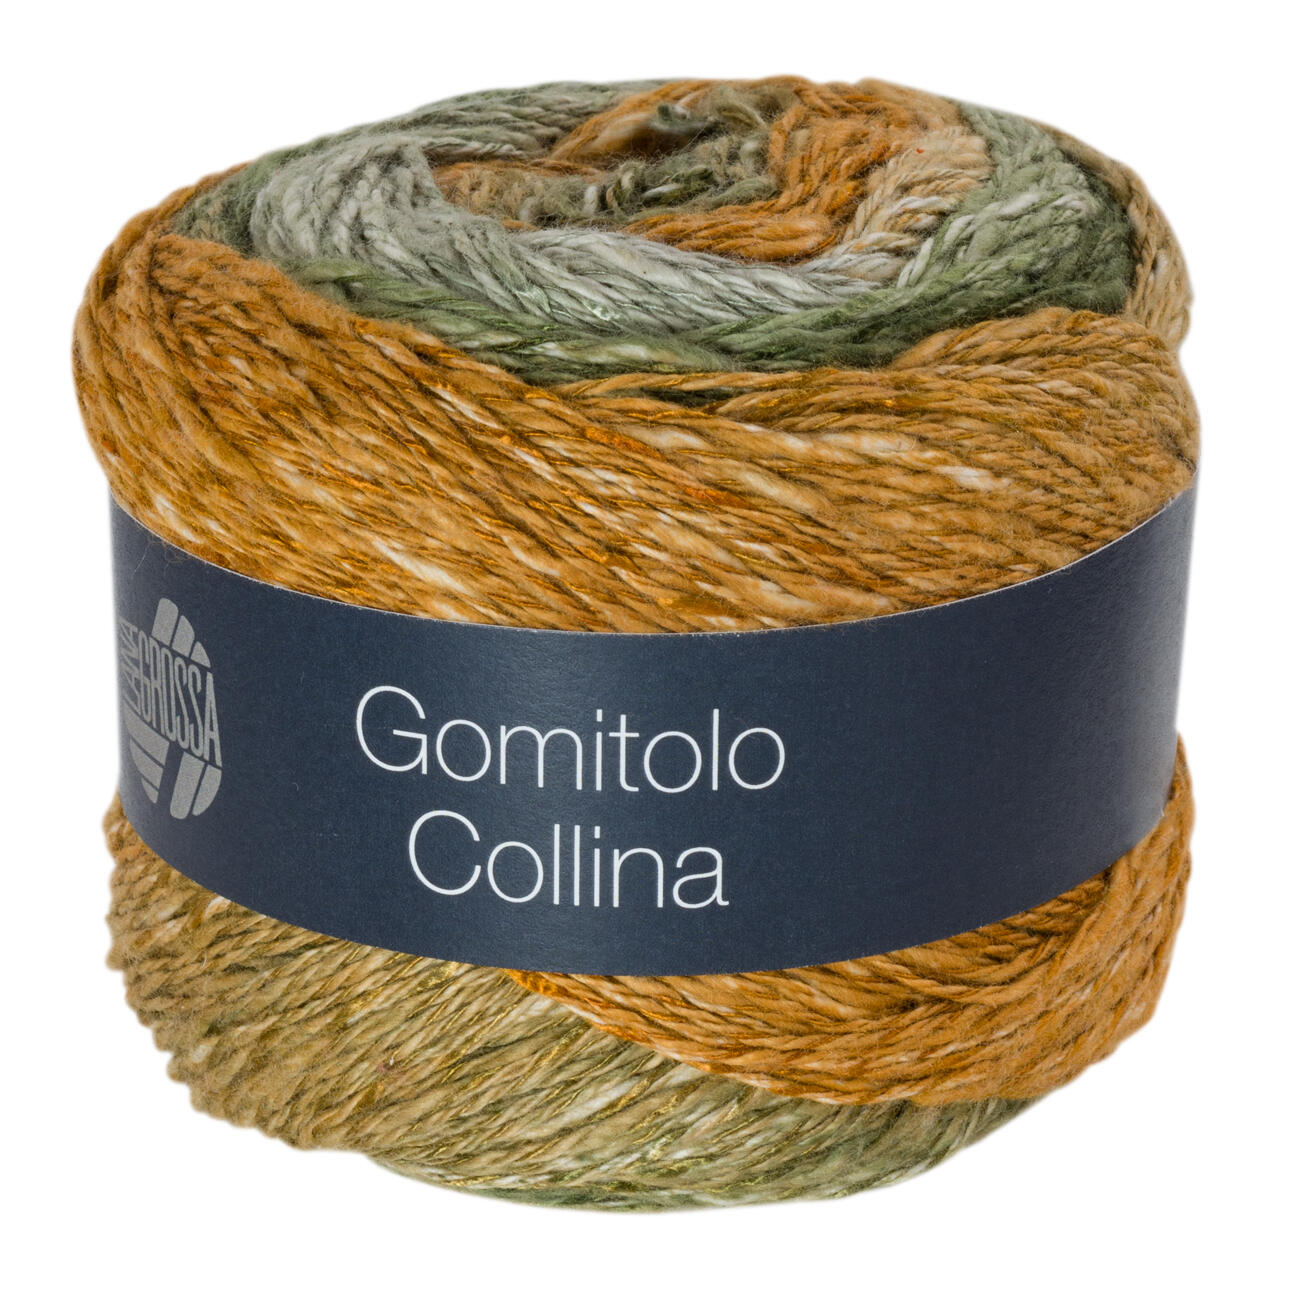 Gomitolo Collina von Lana Grossa, 7 versch. Farben